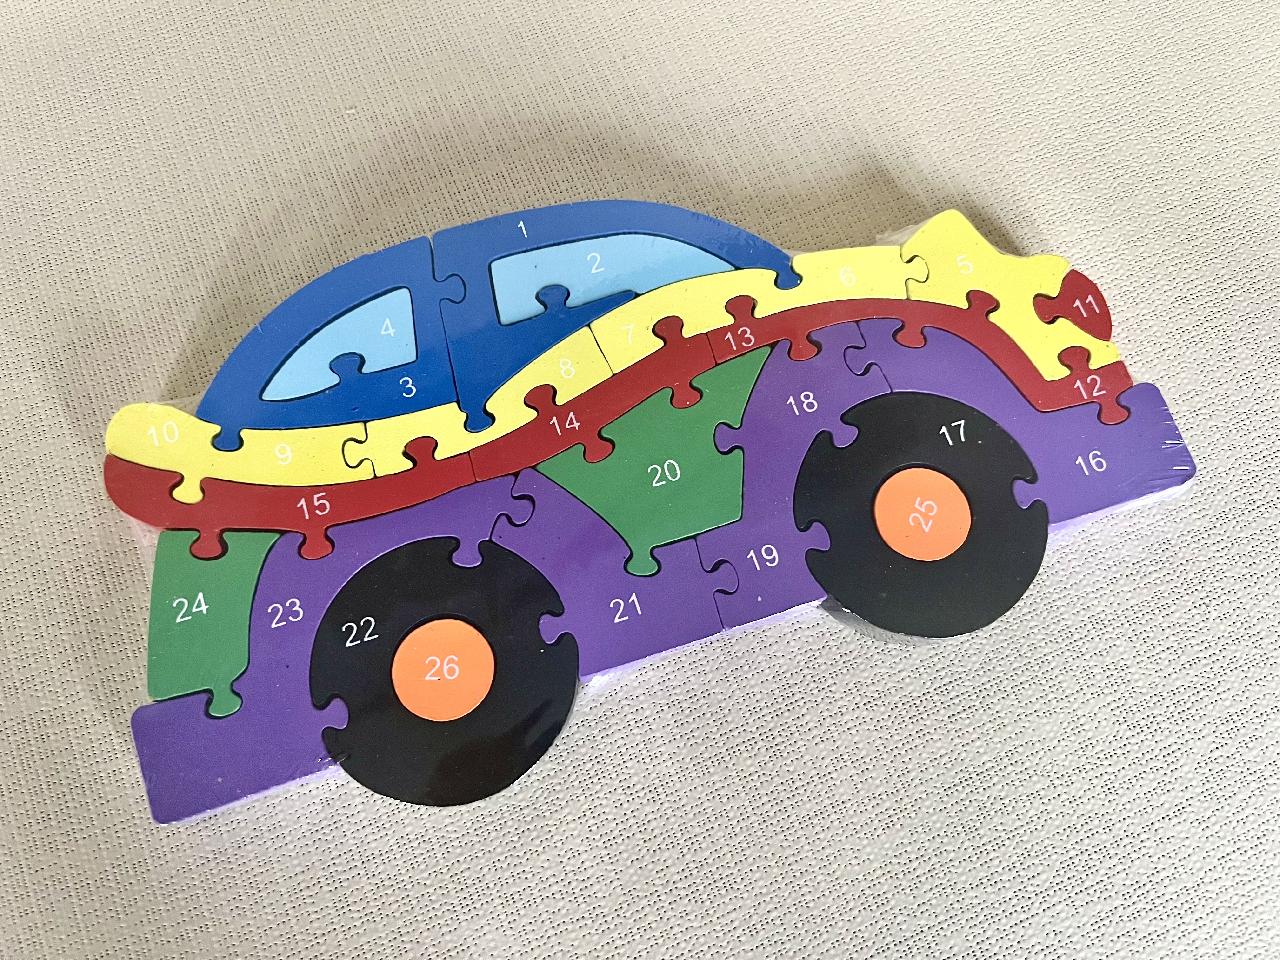 Dřevěné puzzle - auto fialové